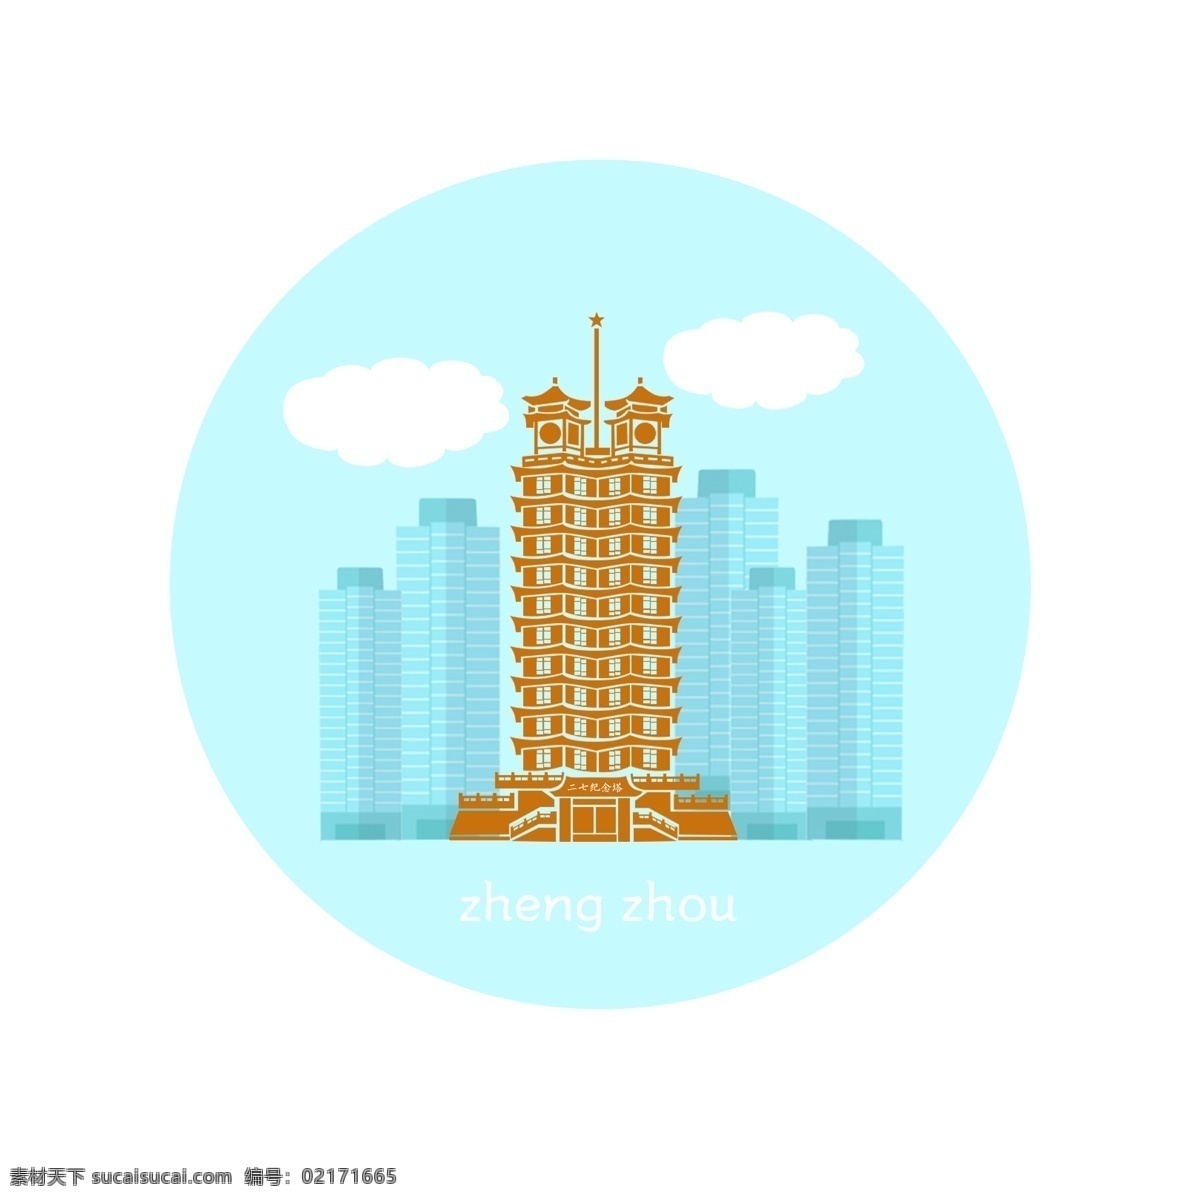 郑州 建筑 标志 二 七 塔 元素 城市 简约 二七塔